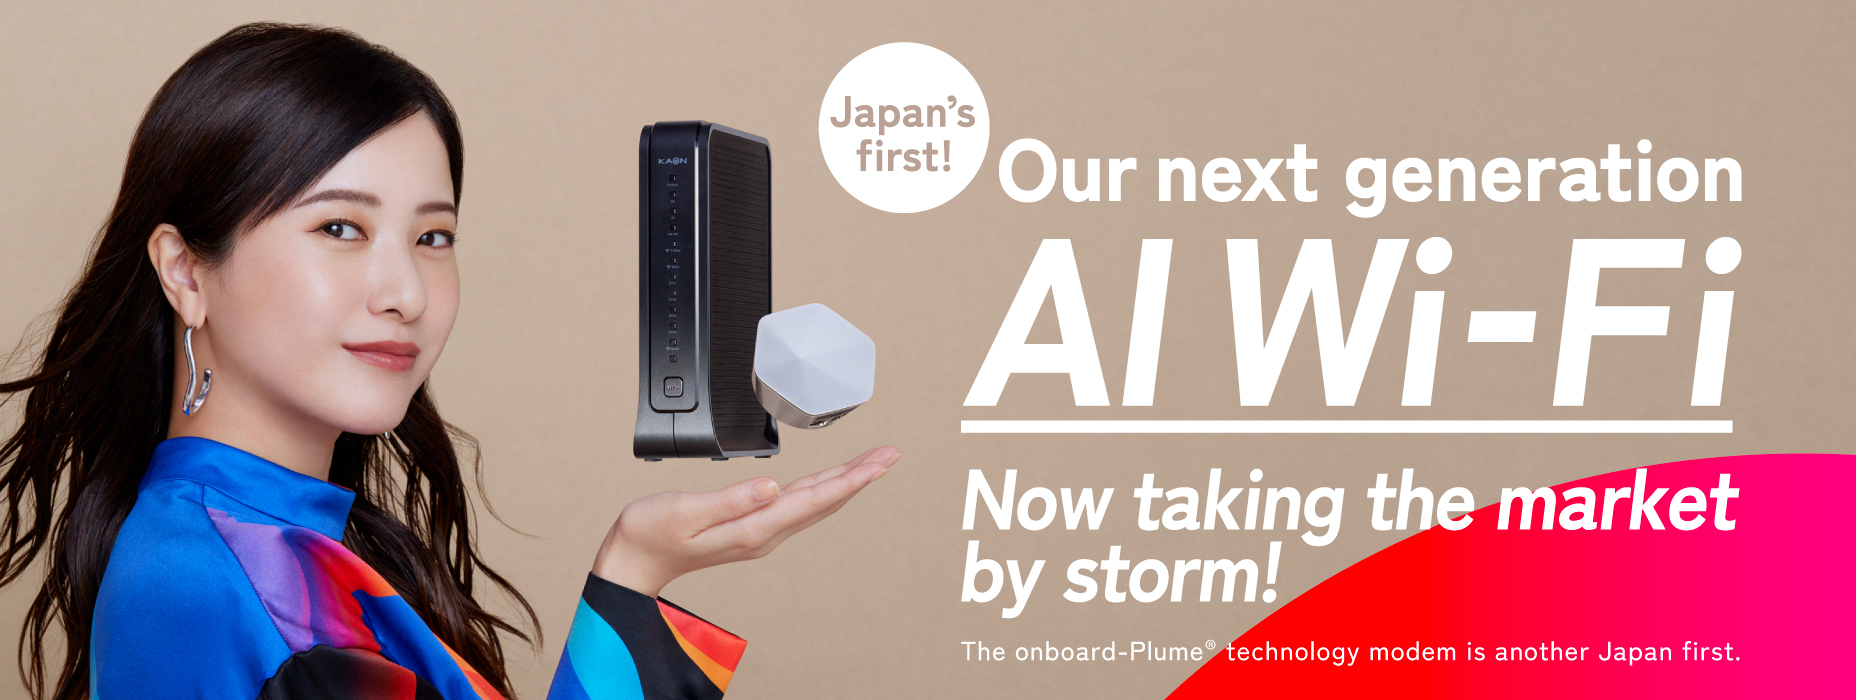 Wi-Fi AI thế hệ tiếp theo đầu tiên của Nhật Bản rất phổ biến! * Lần bán modem đầu tiên của Nhật Bản với công nghệ PLUME® tích hợp